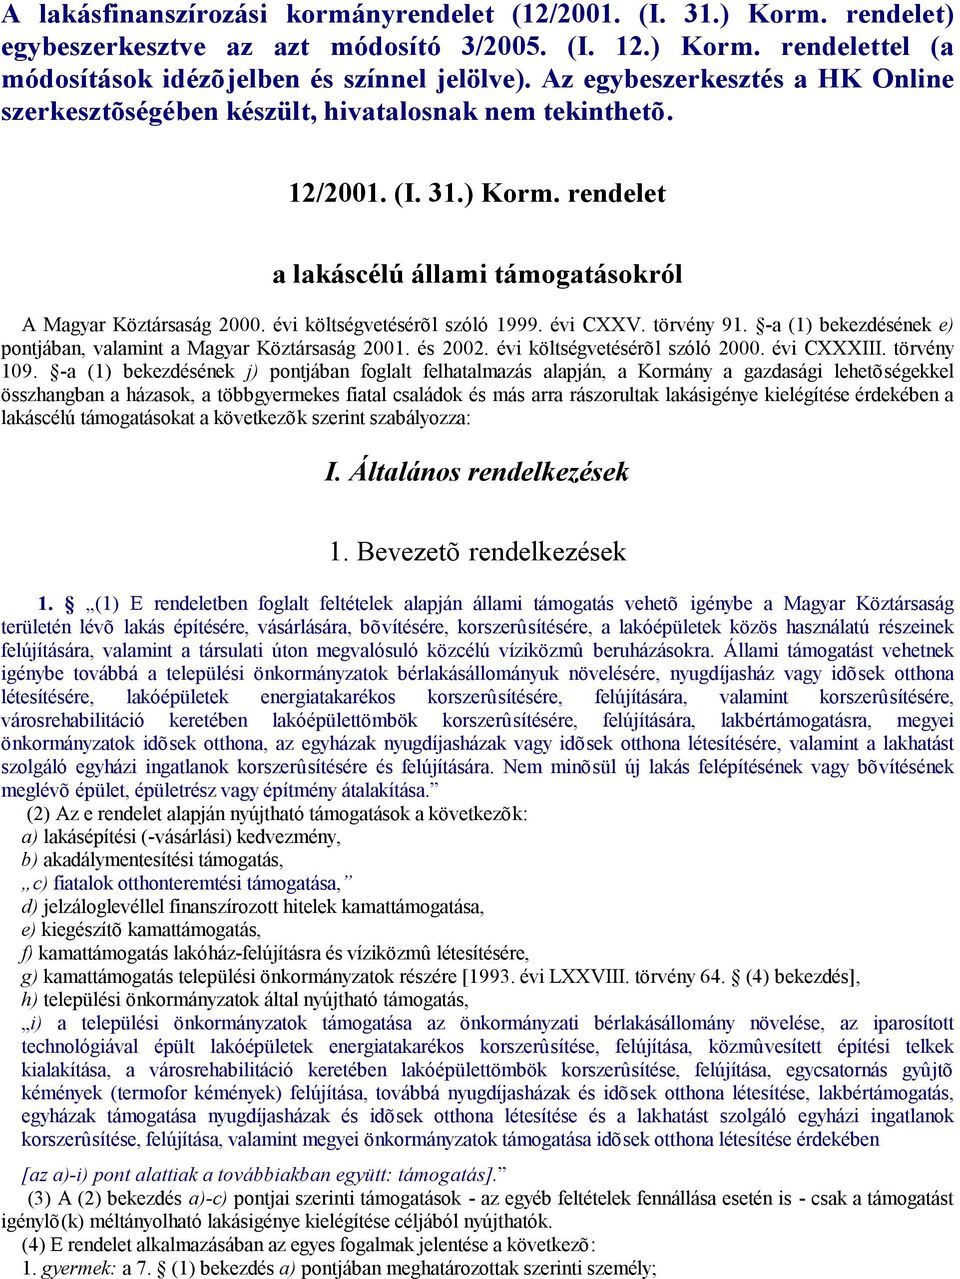 évi költségvetésérõl szóló 1999. évi CXXV. törvény 91. -a (1) bekezdésének e) pontjában, valamint a Magyar Köztársaság 2001. és 2002. évi költségvetésérõl szóló 2000. évi CXXXIII. törvény 109.